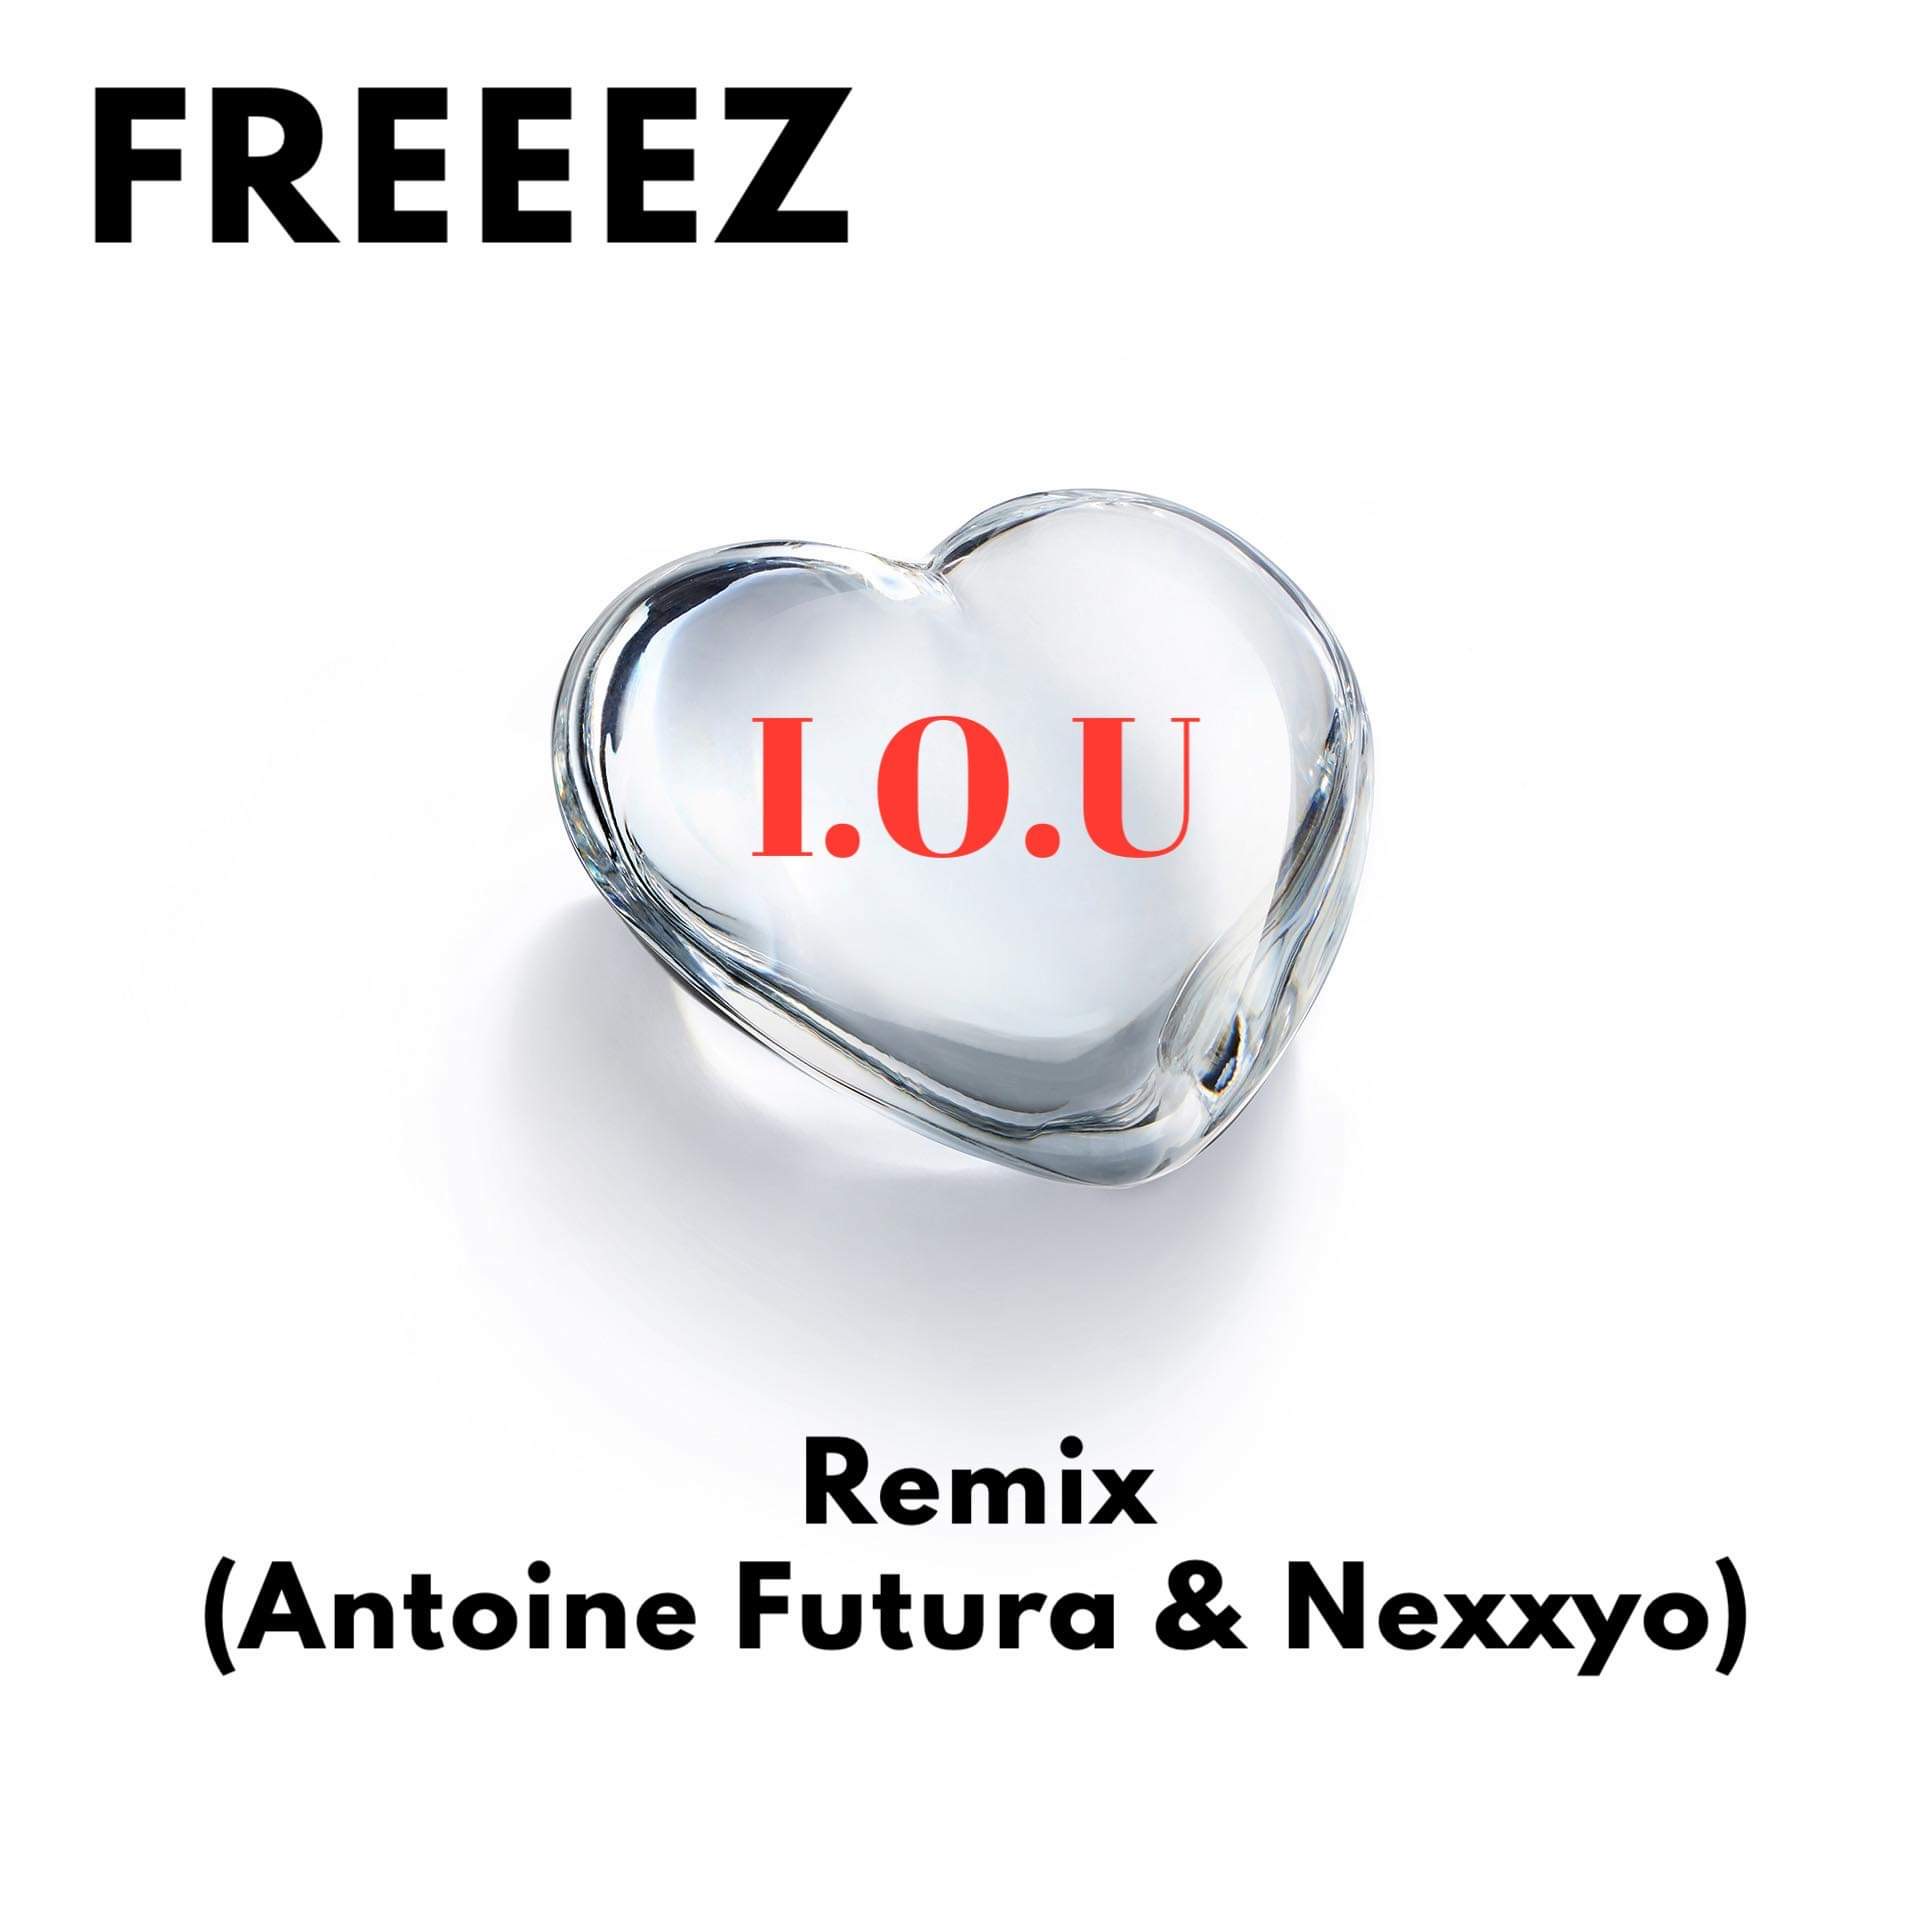 Découvrez le remix de Freez par notre DJ résident Nexxyo et Antoine Futura